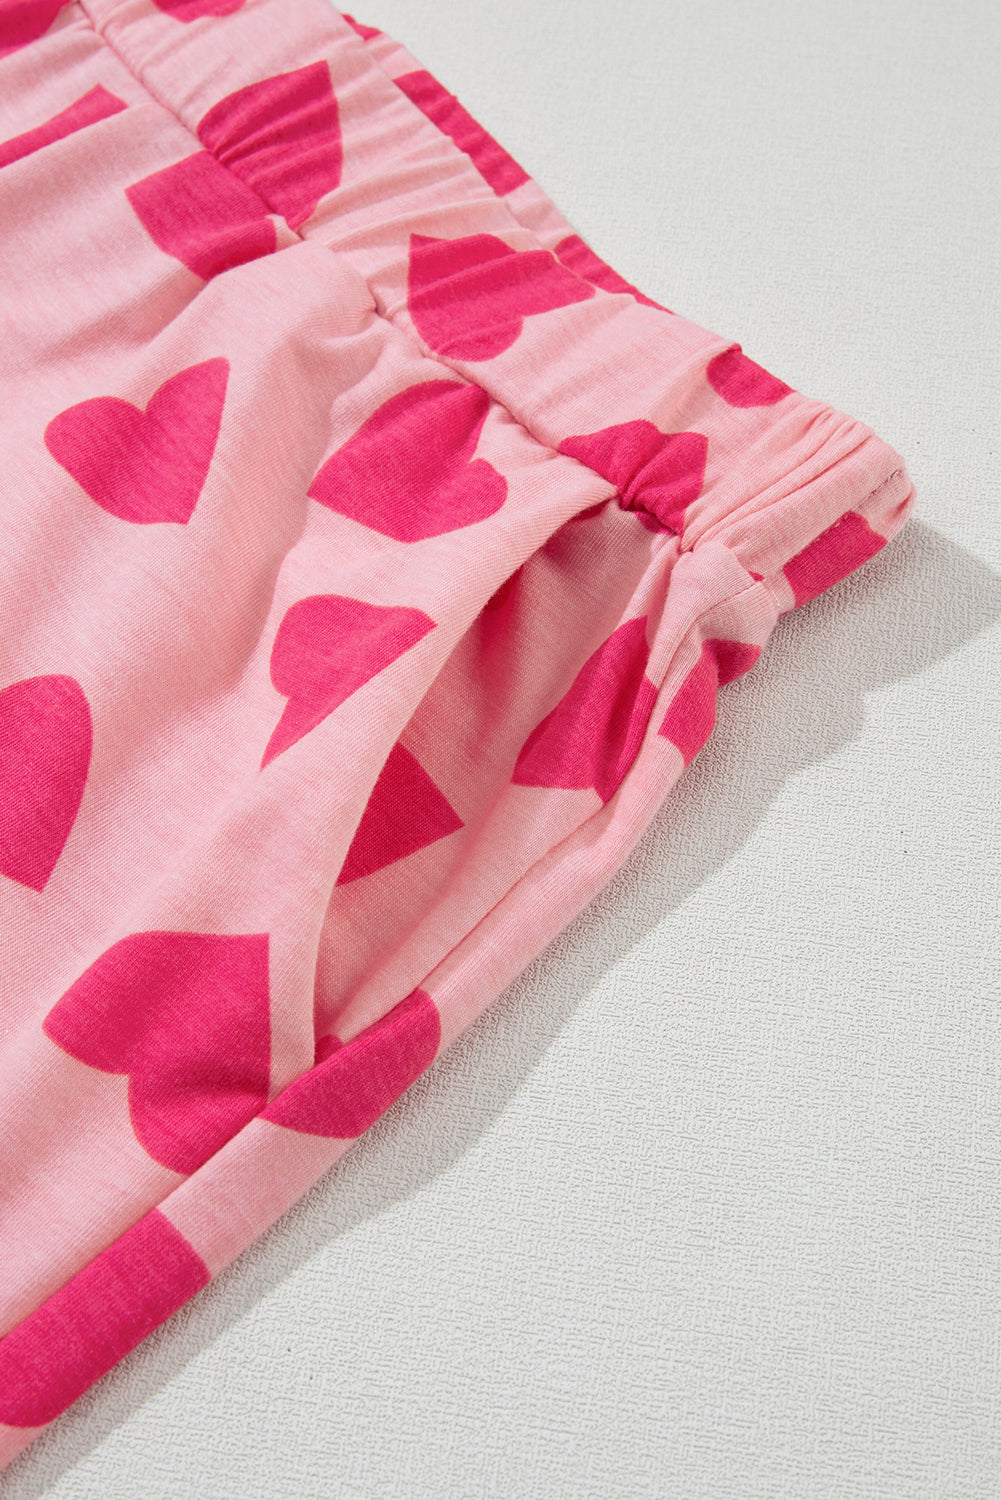 Ružičasta majica kratkih rukava s printom u obliku srca za Valentinovo, salonski komplet